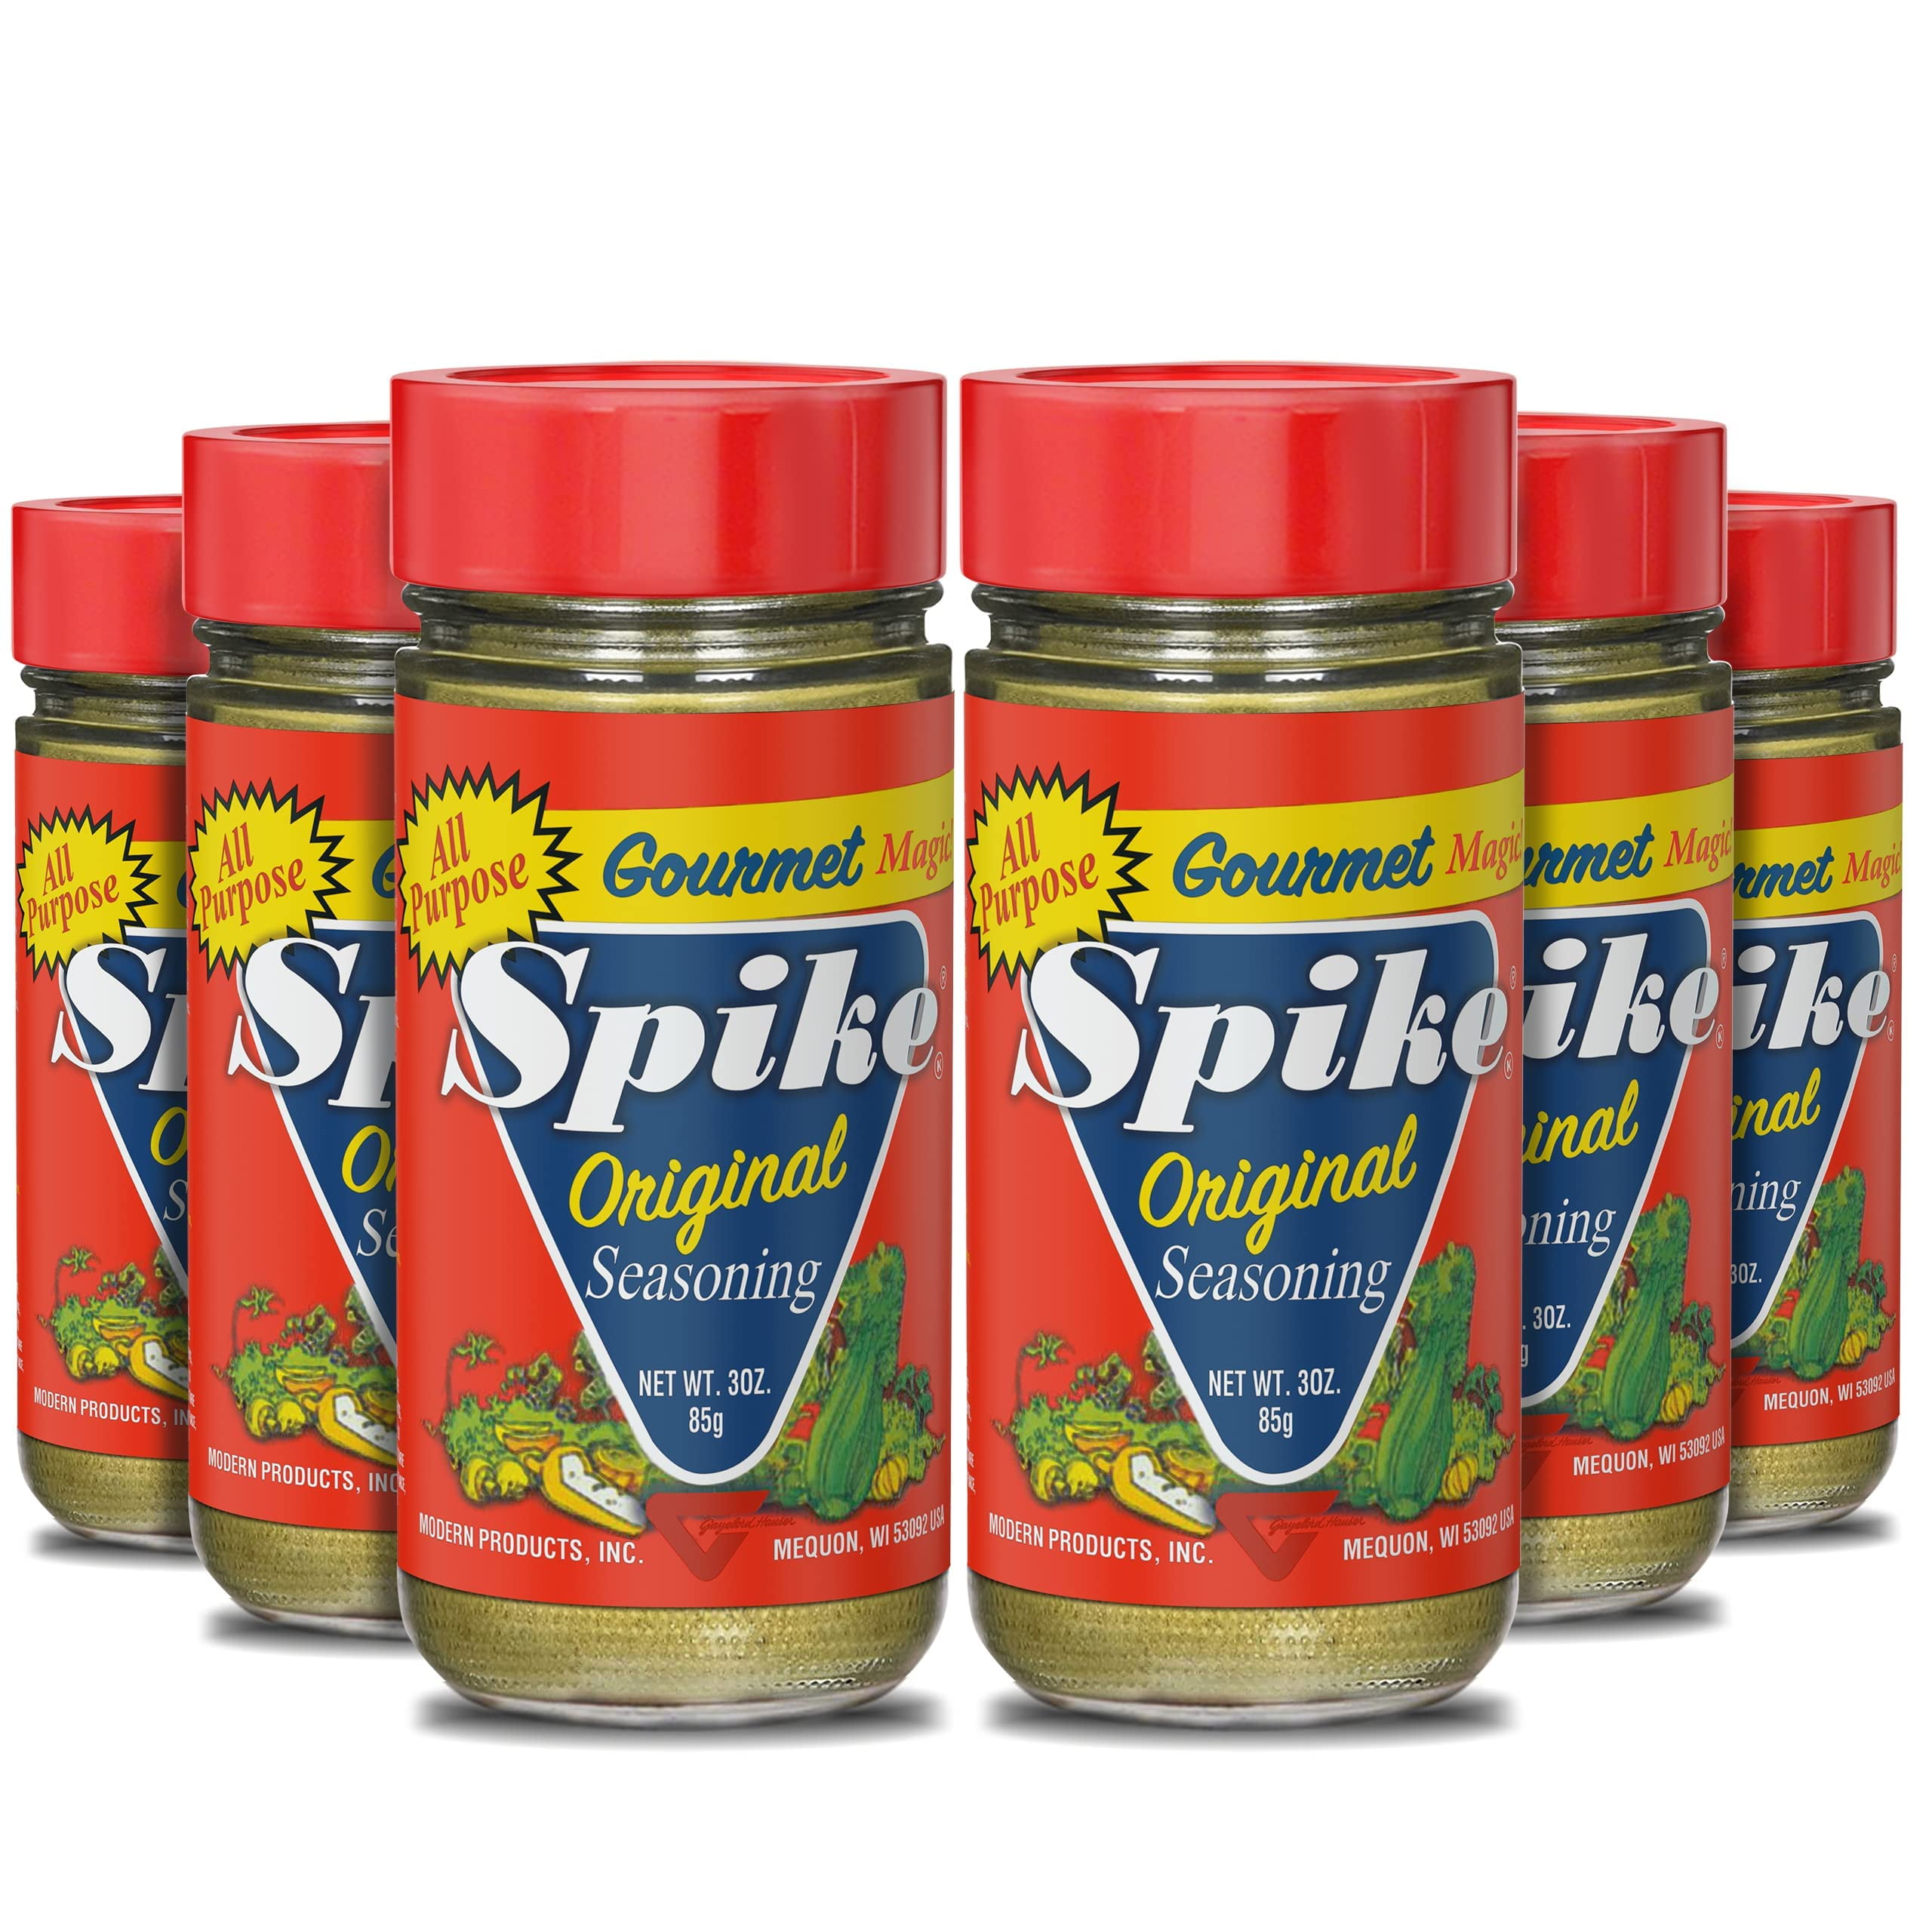 VEGIT Spike Gourmet Natural Seasoning- very low sodium - Healthy